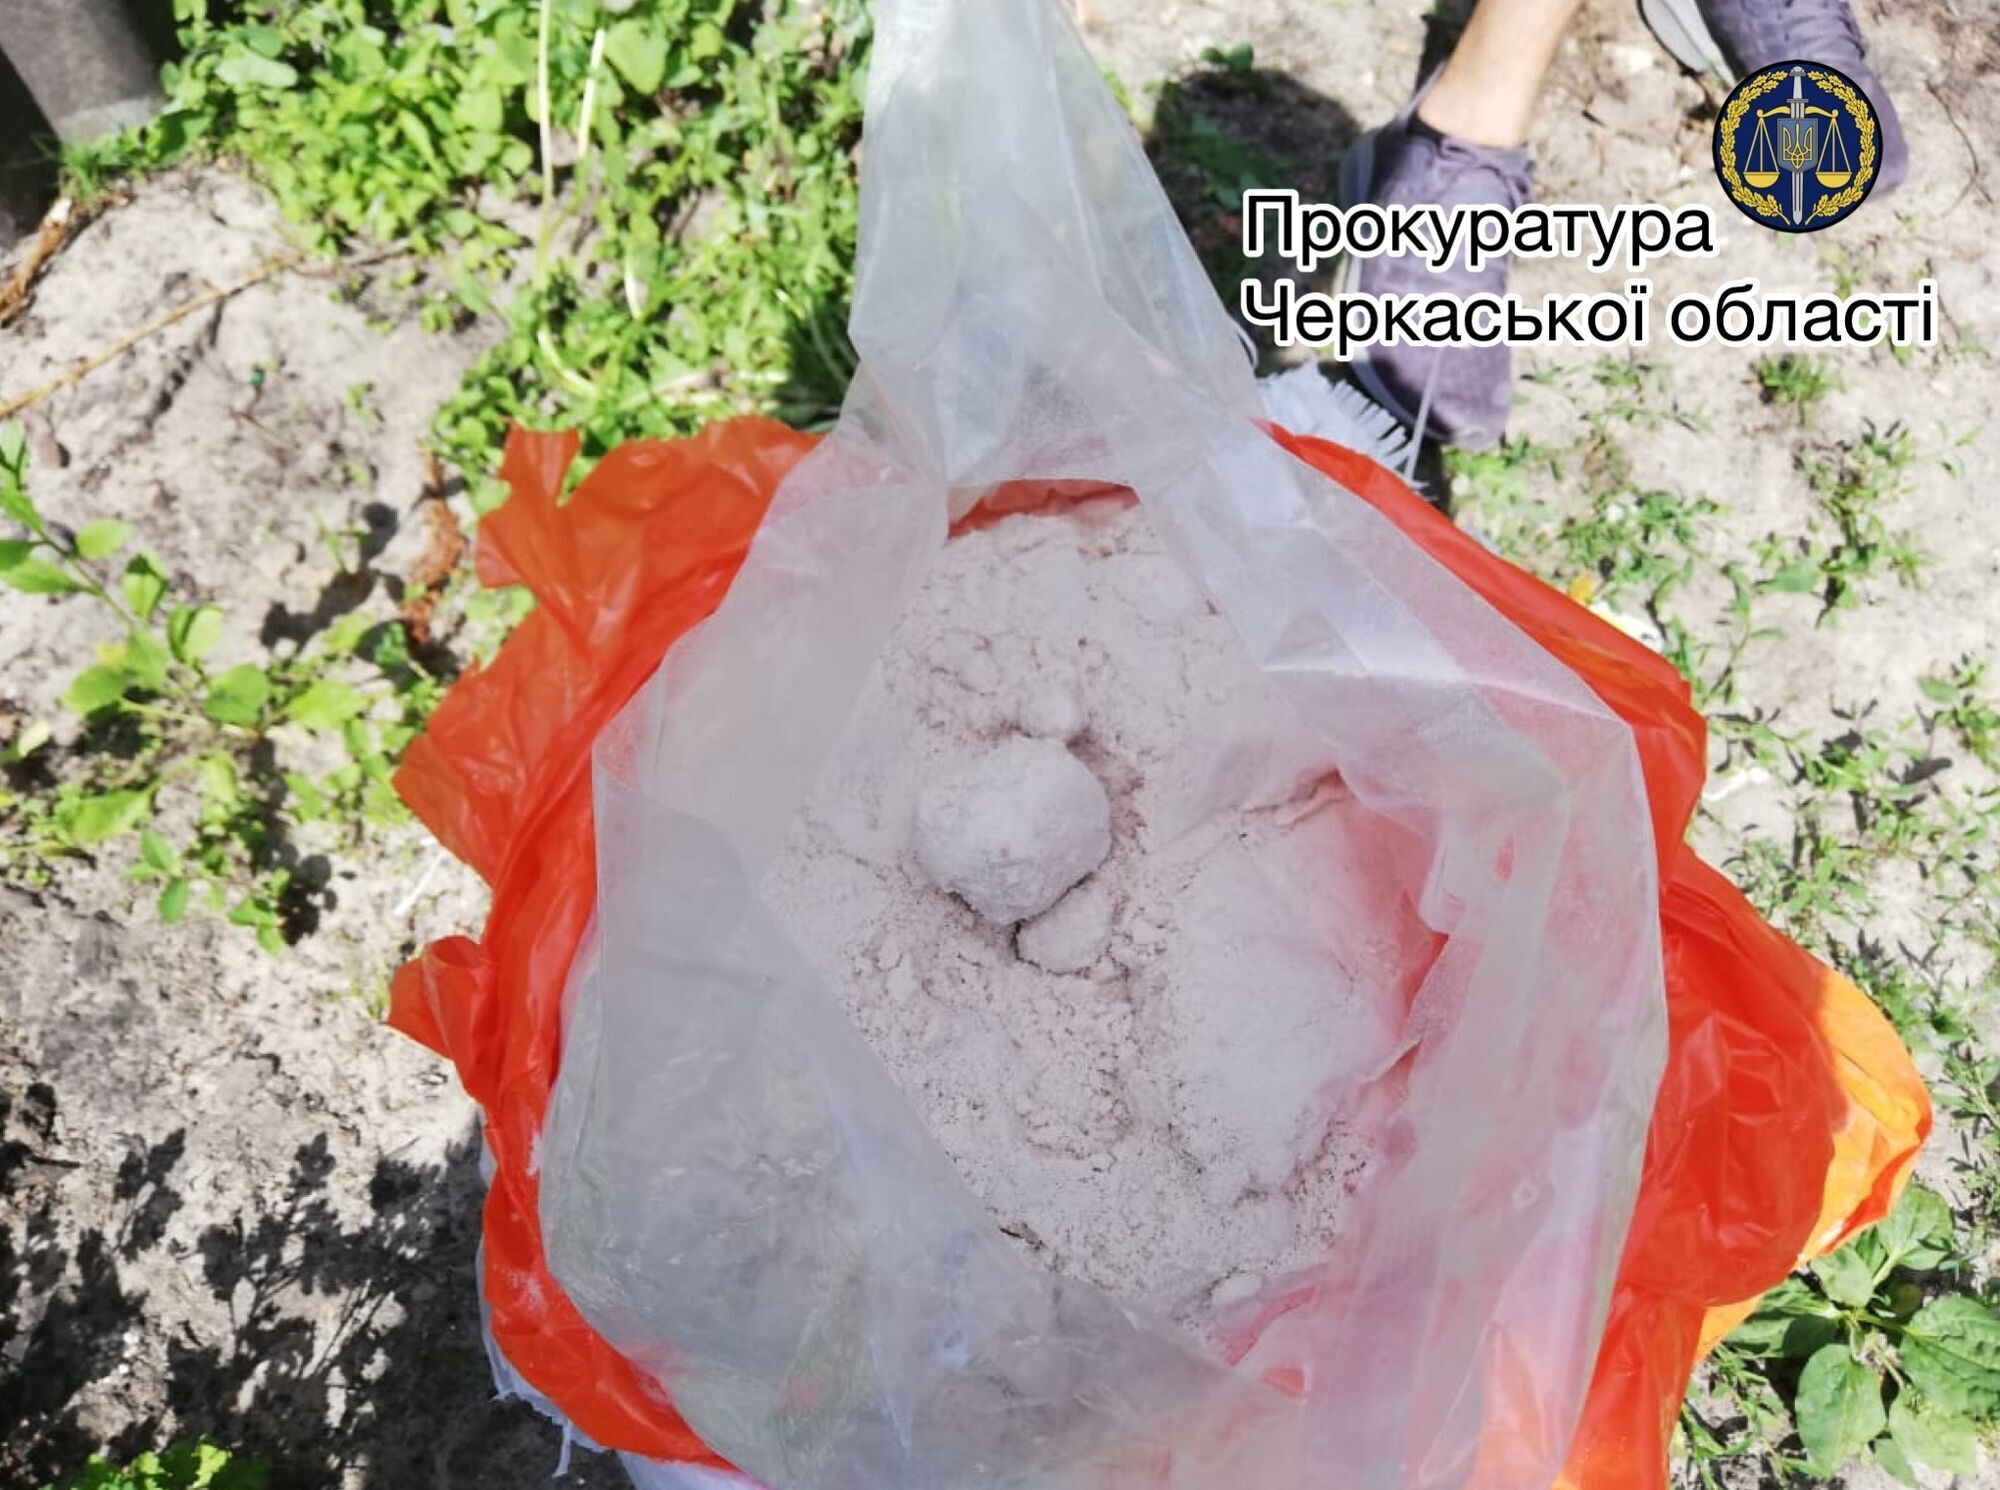 Правоохоронці попередили контрабанду 30 кг наркотиків через український кордон до Росії (ФОТО)